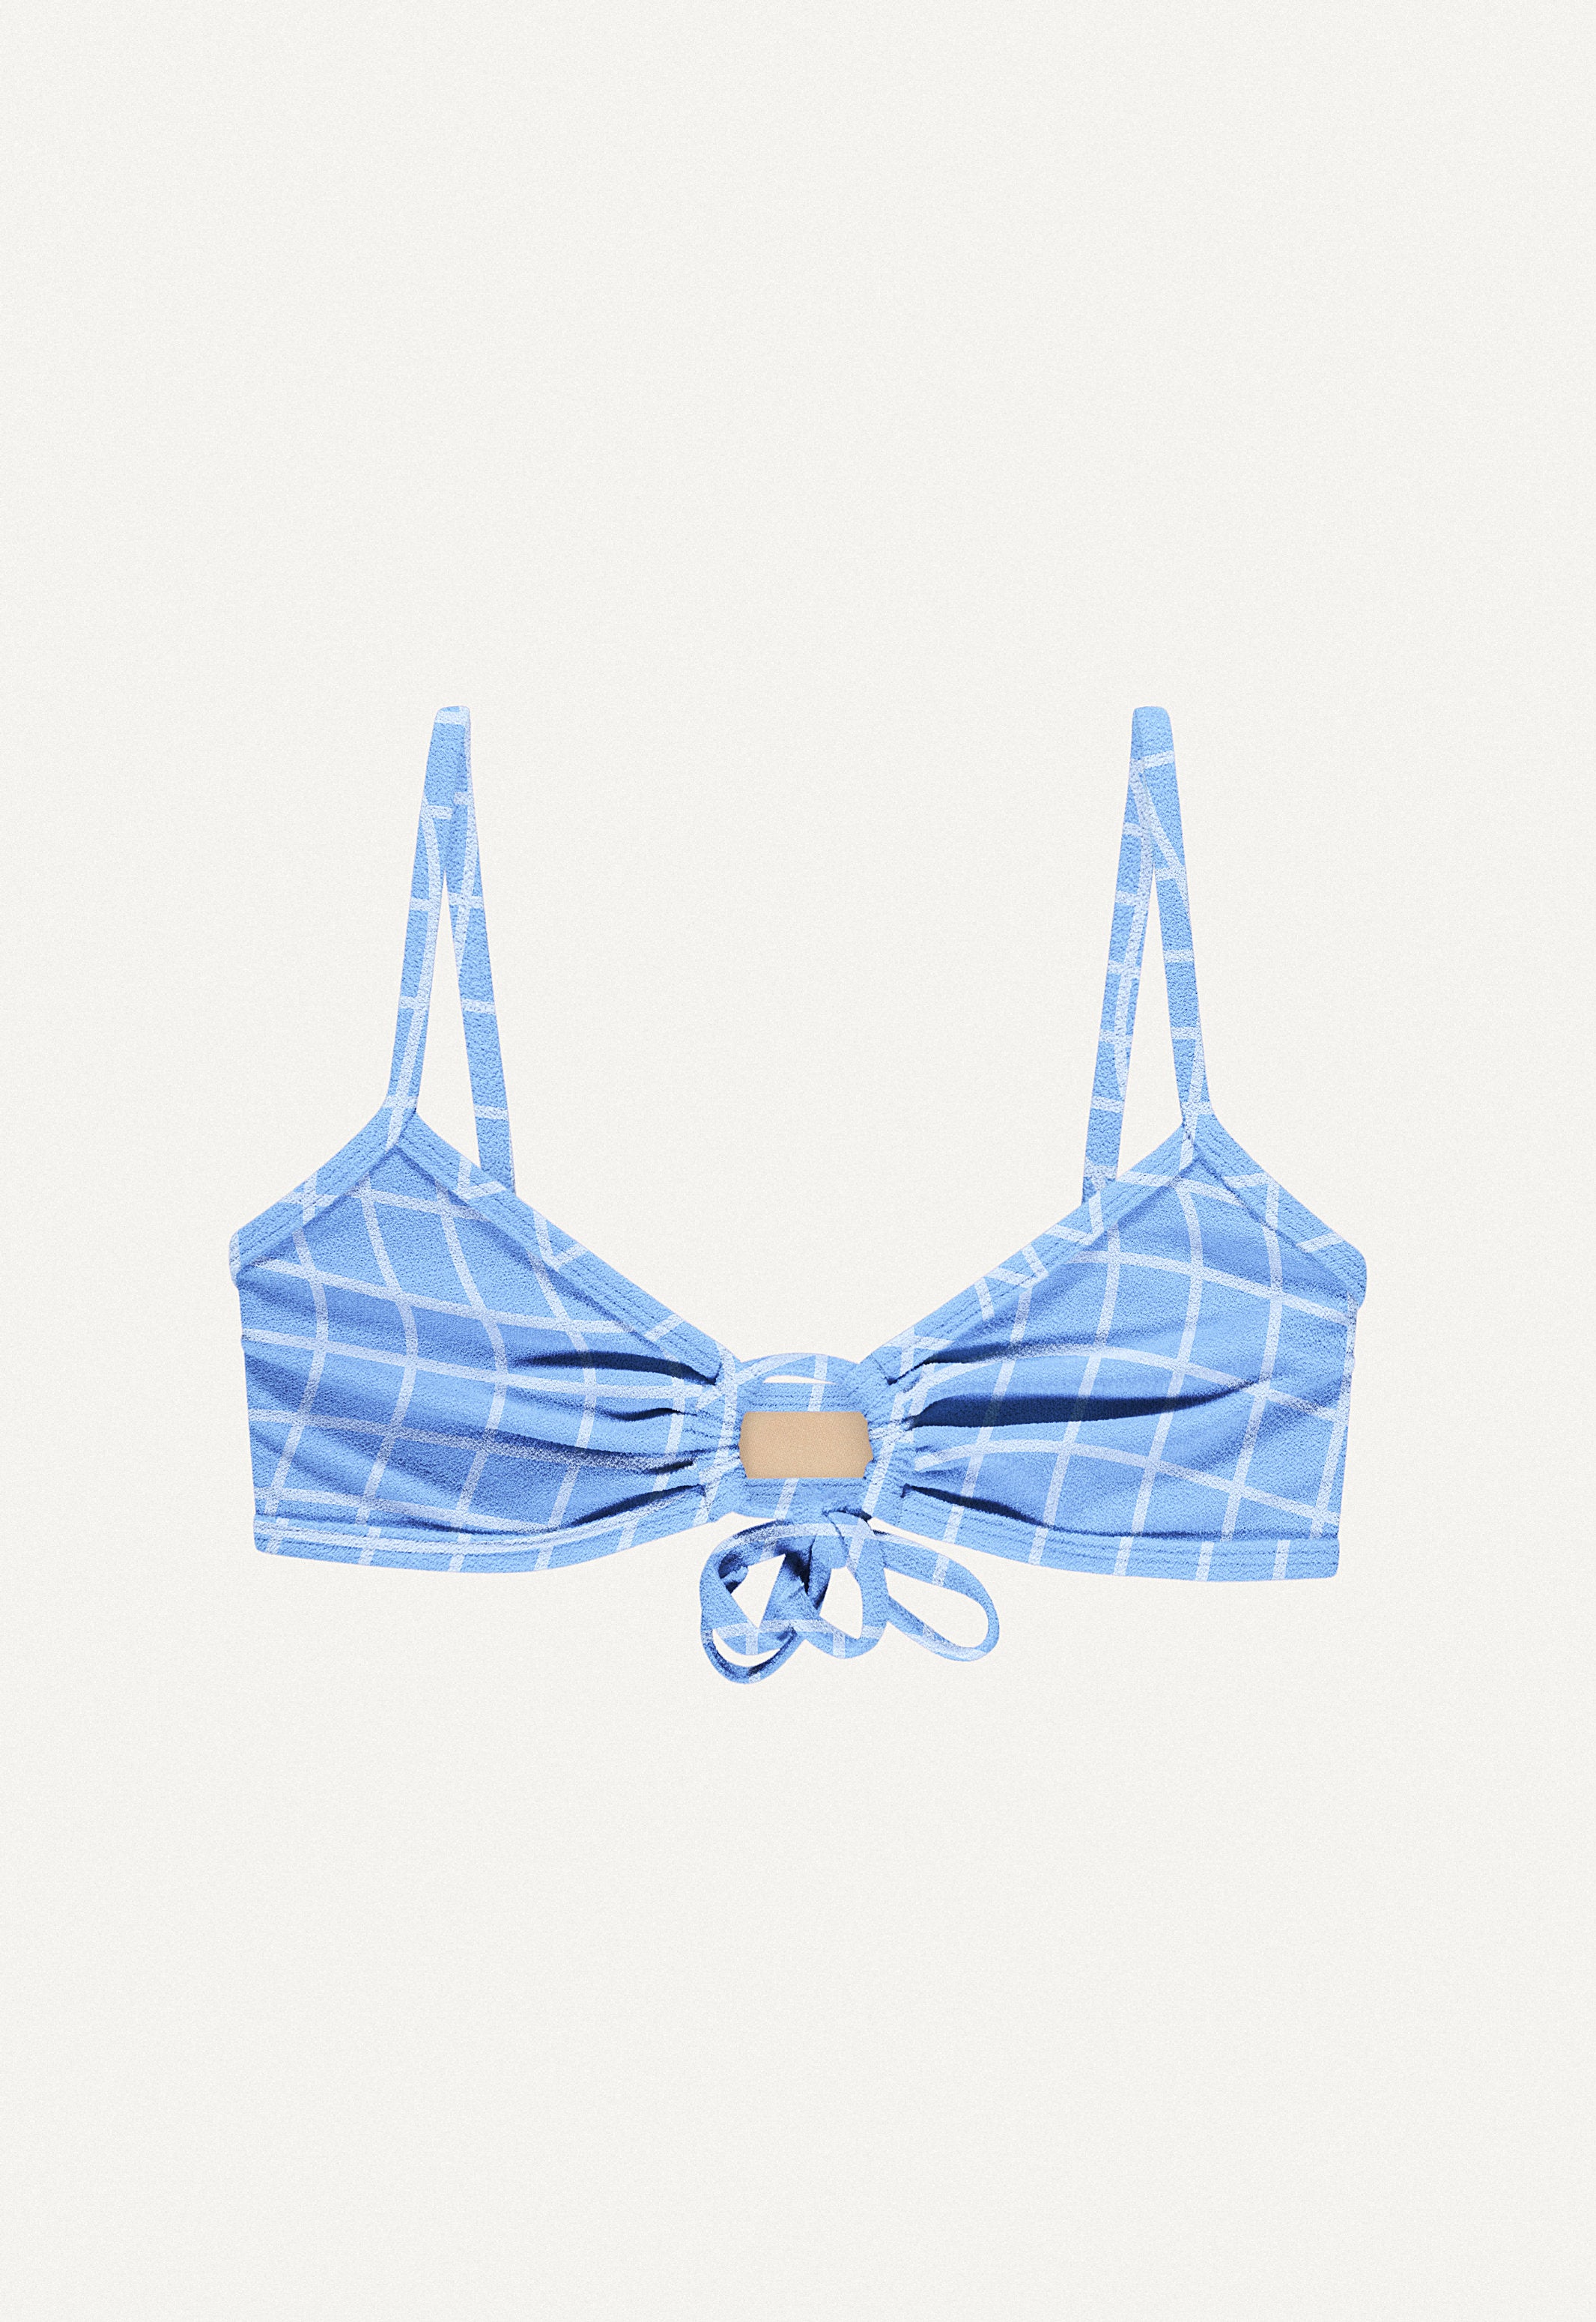 Bikini Top "Joran" in blue pool print terry